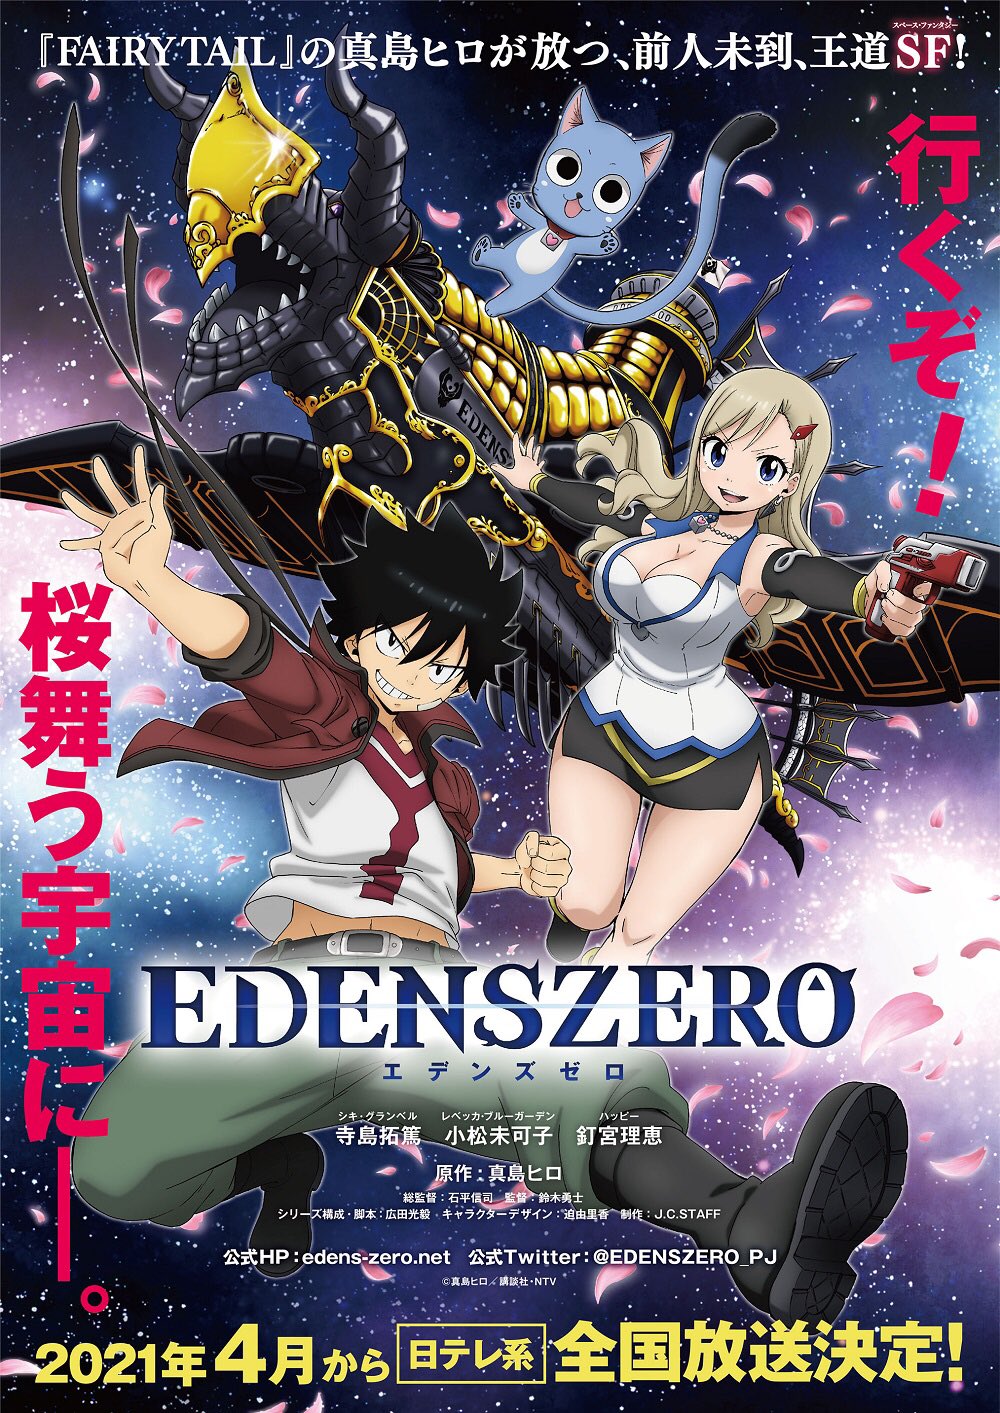 Edens Zero Dublado - Episódio 7 - Animes Online